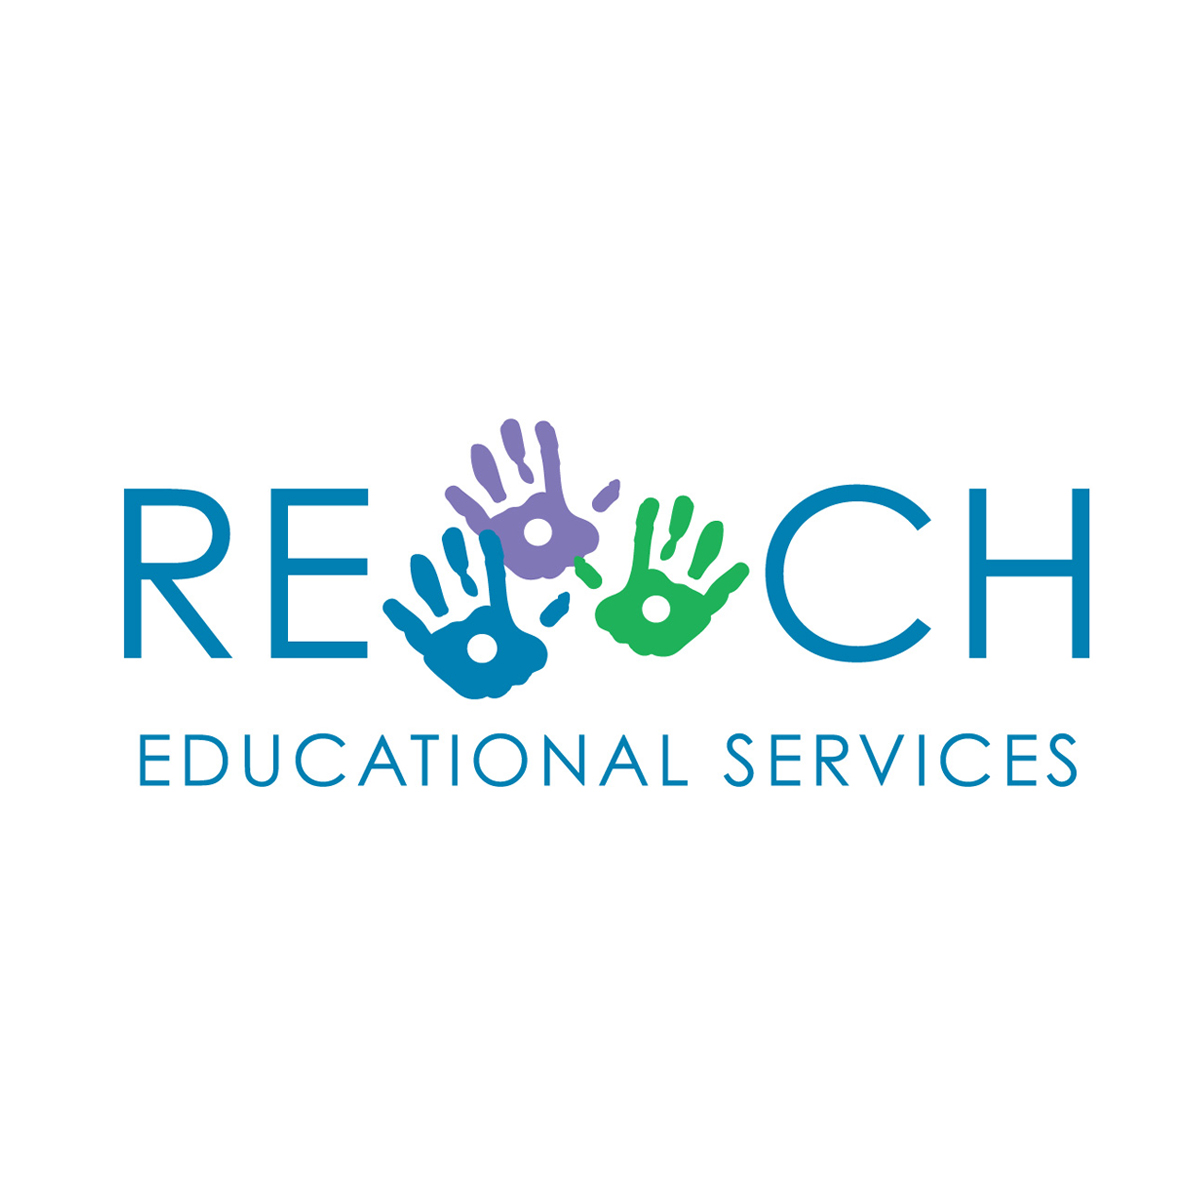 reach logo redesigned